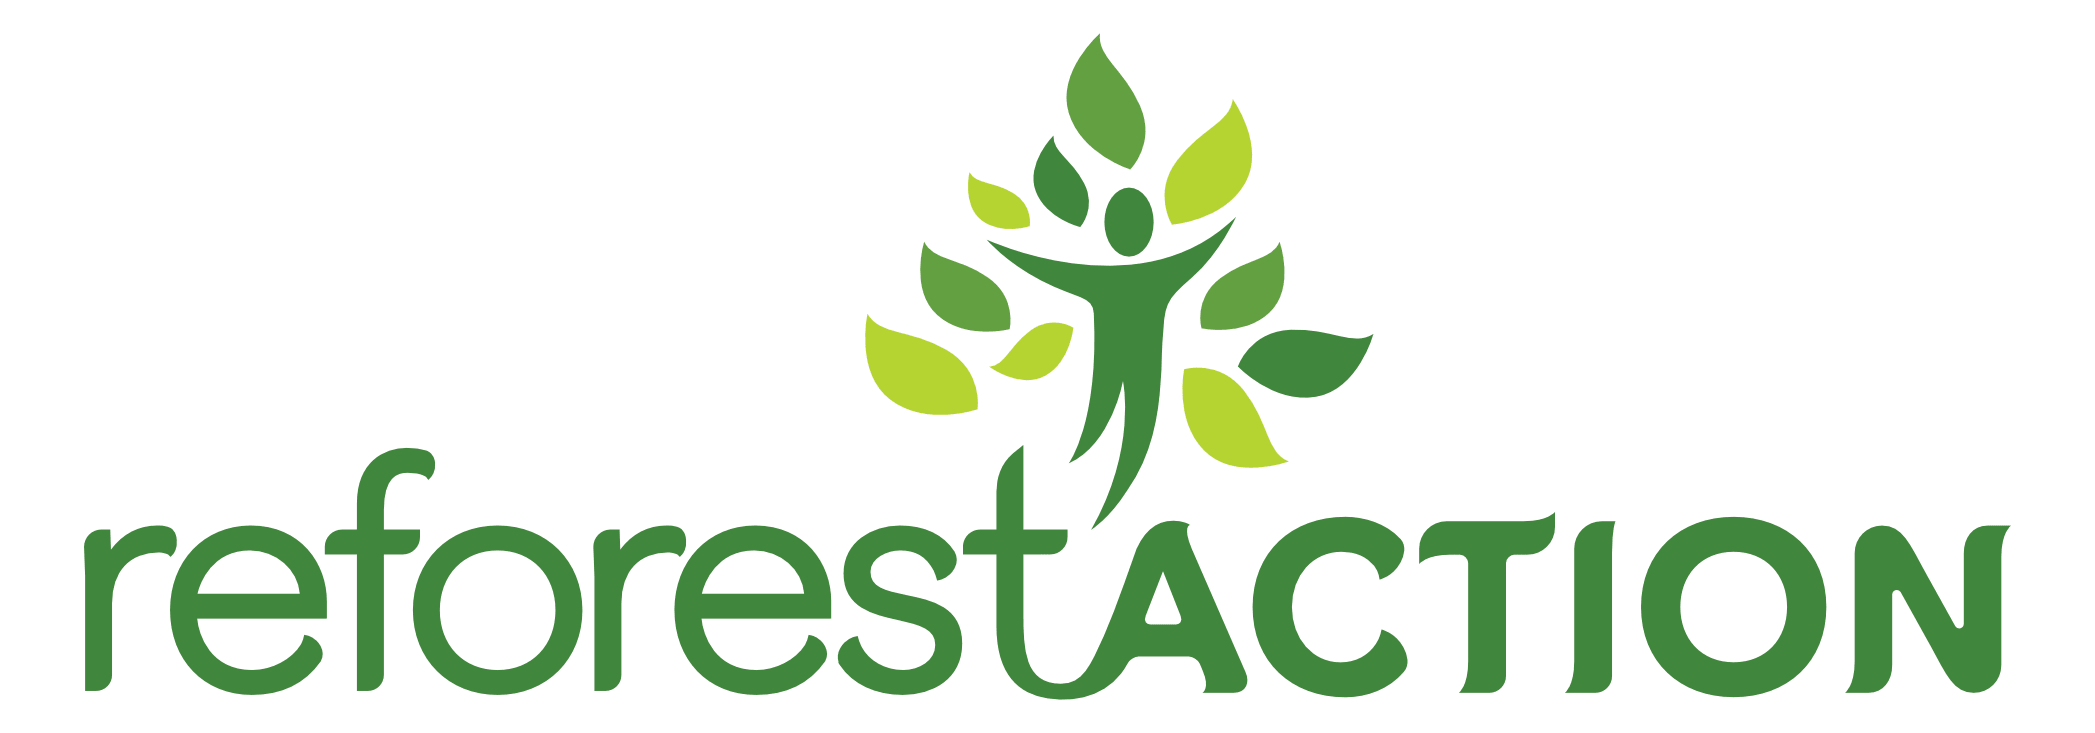 Logo de reforest